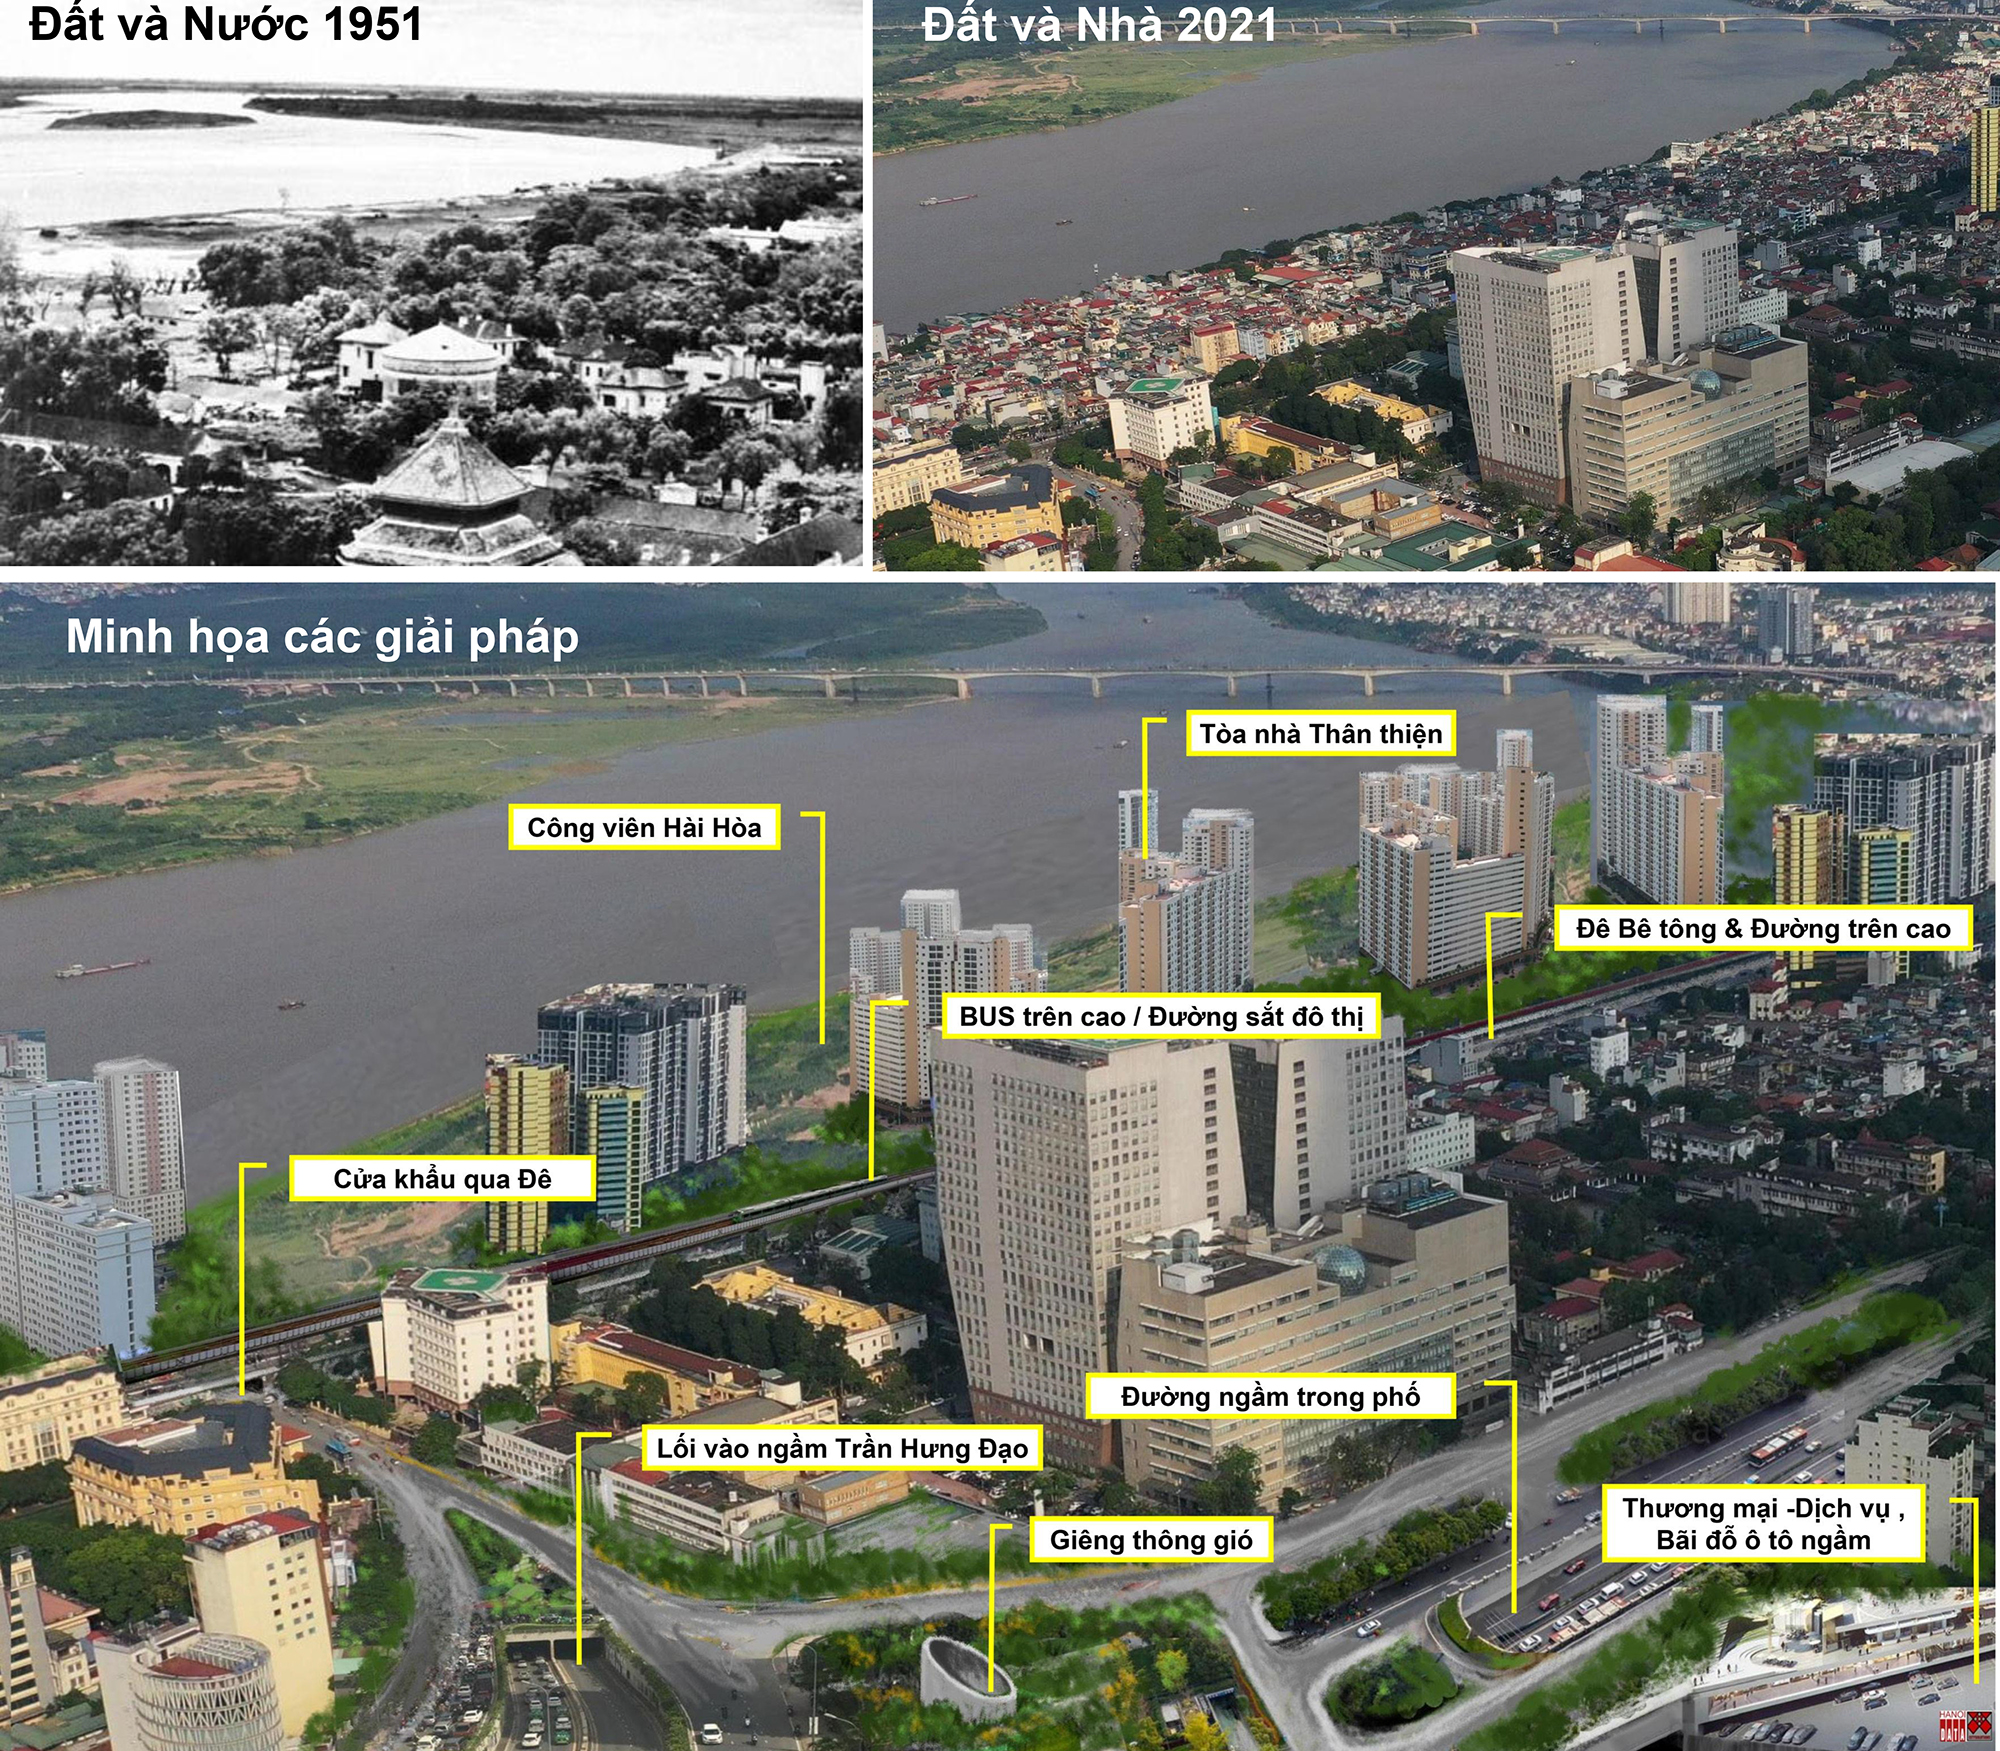 Minh họa tích hợp các công trình chung quanh đầu cầu Trần Hưng Đạo. Nguồn ảnh do City Solution&Hanoidata cung cấp